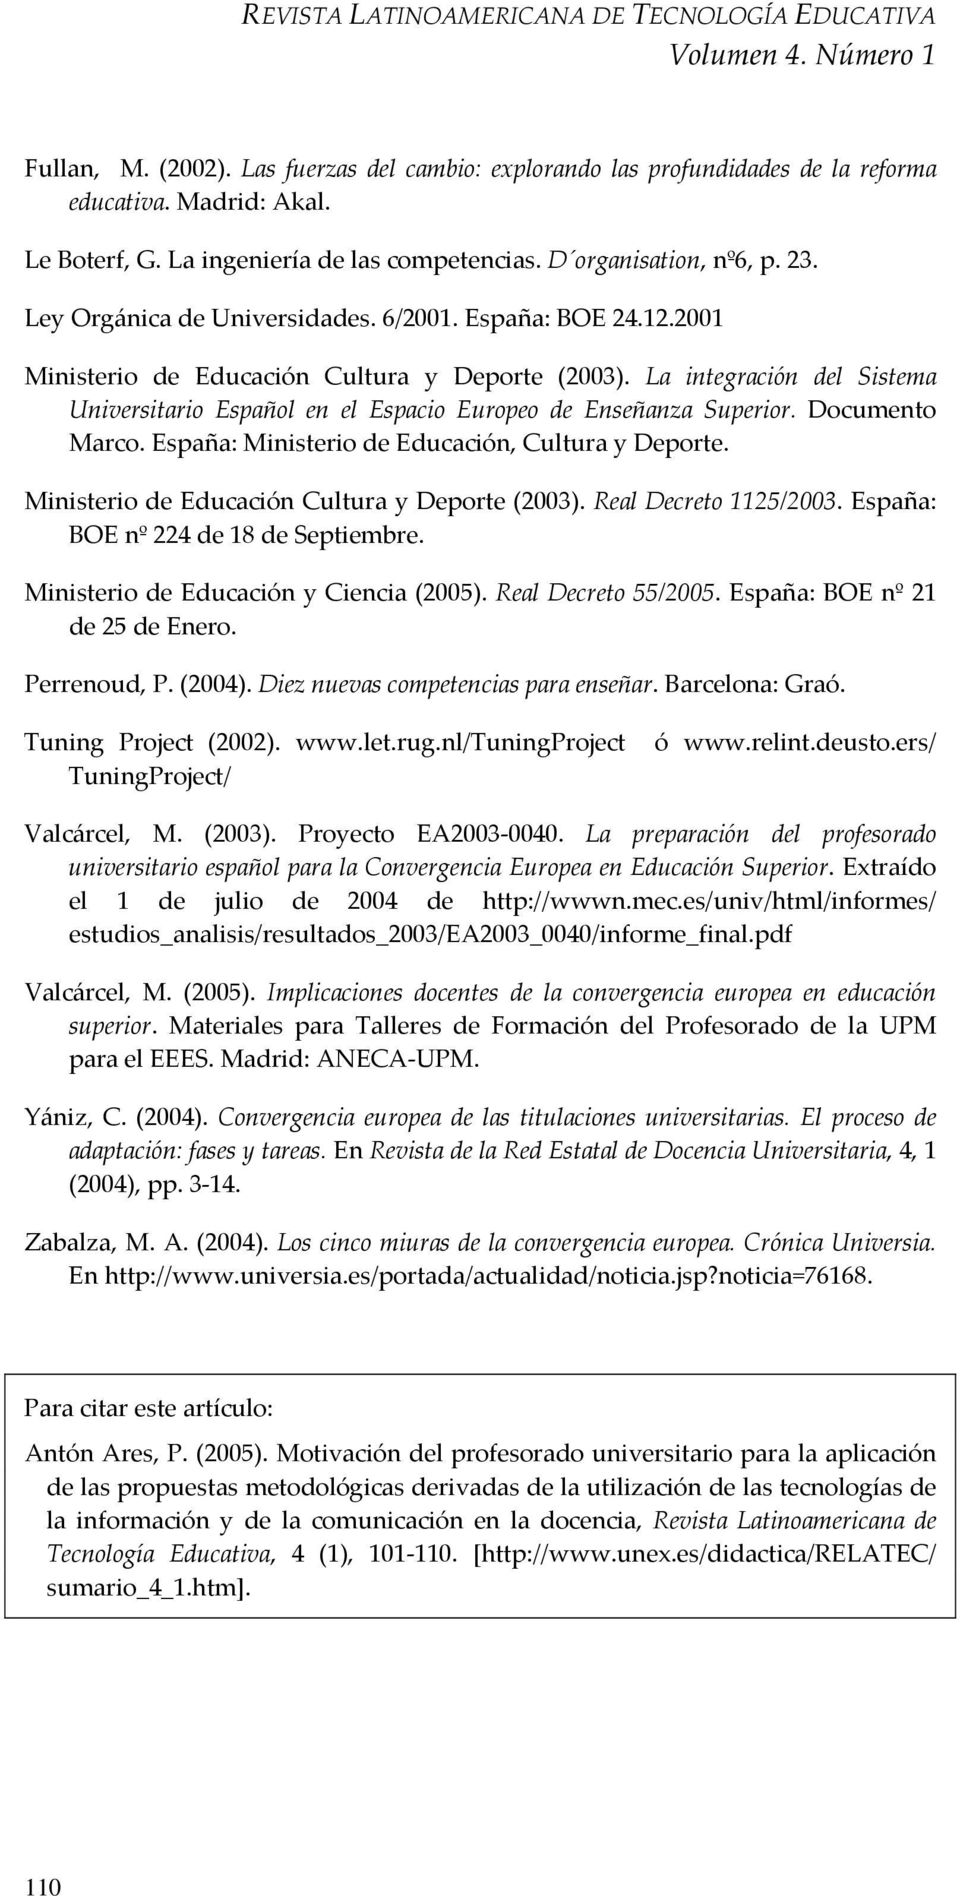 La integración del Sistema Universitario Español en el Espacio Europeo de Enseñanza Superior. Documento Marco. España: Ministerio de Educación, Cultura y Deporte.